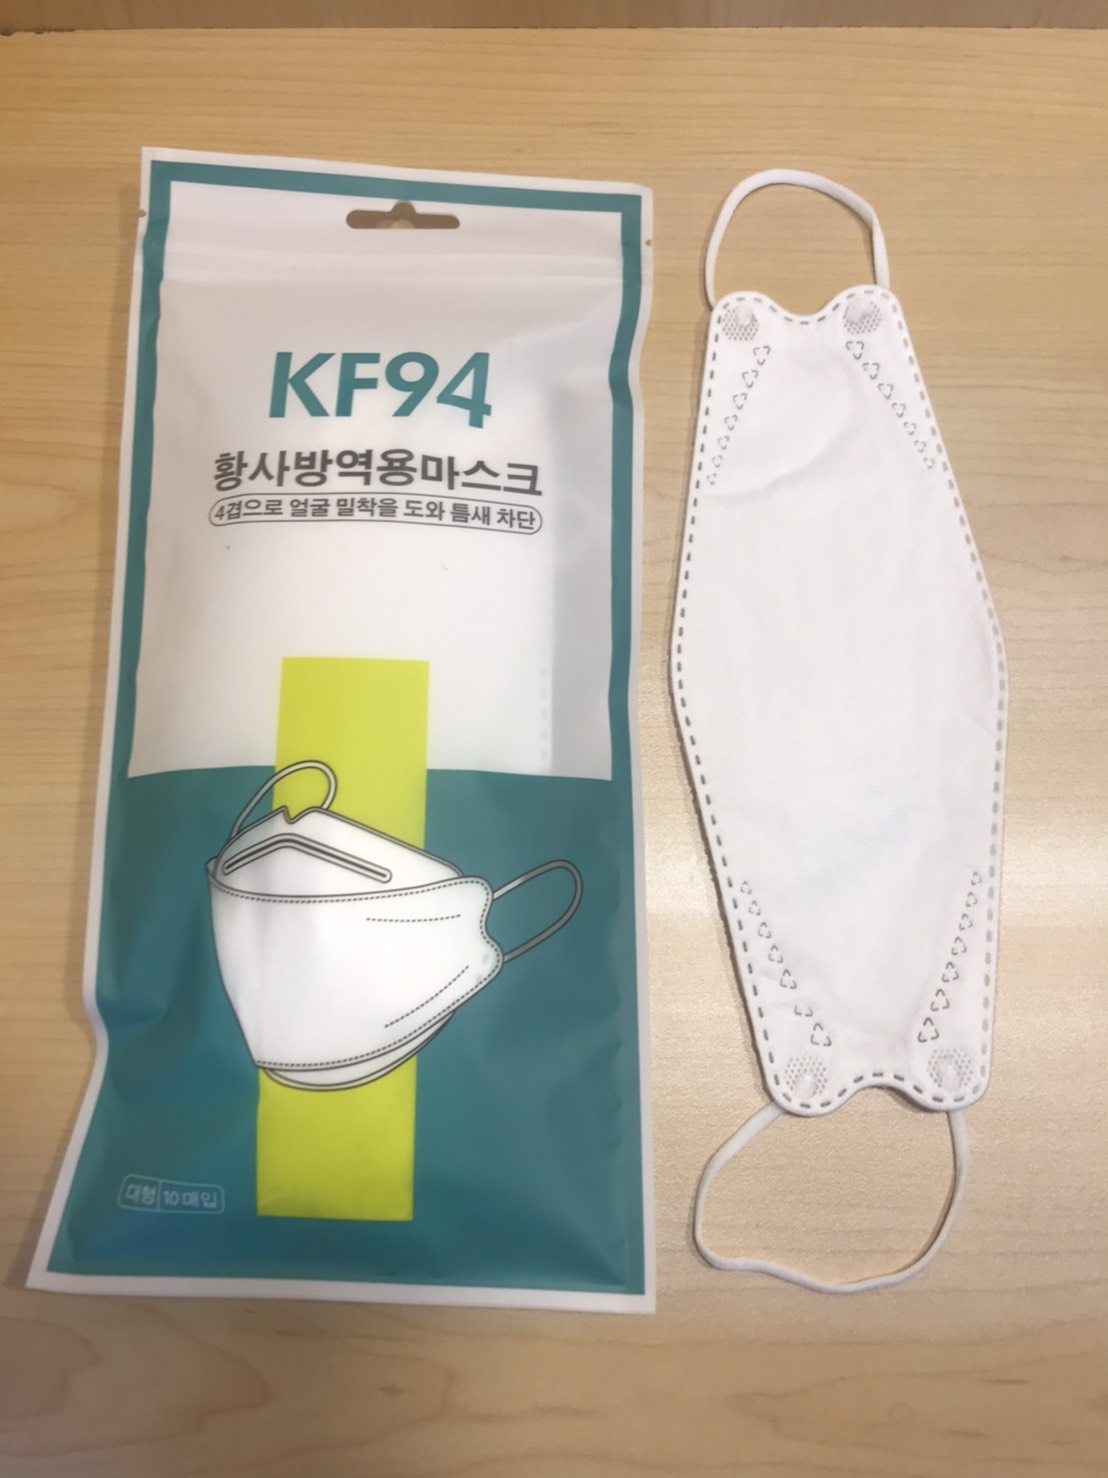 หน้ากากอนามัย KF94 กันฝุ่น กันเชื้อโรค 1 แพ็ก 10 ชิ้น / แอลกอฮอล์แบบขวด 100 ml.